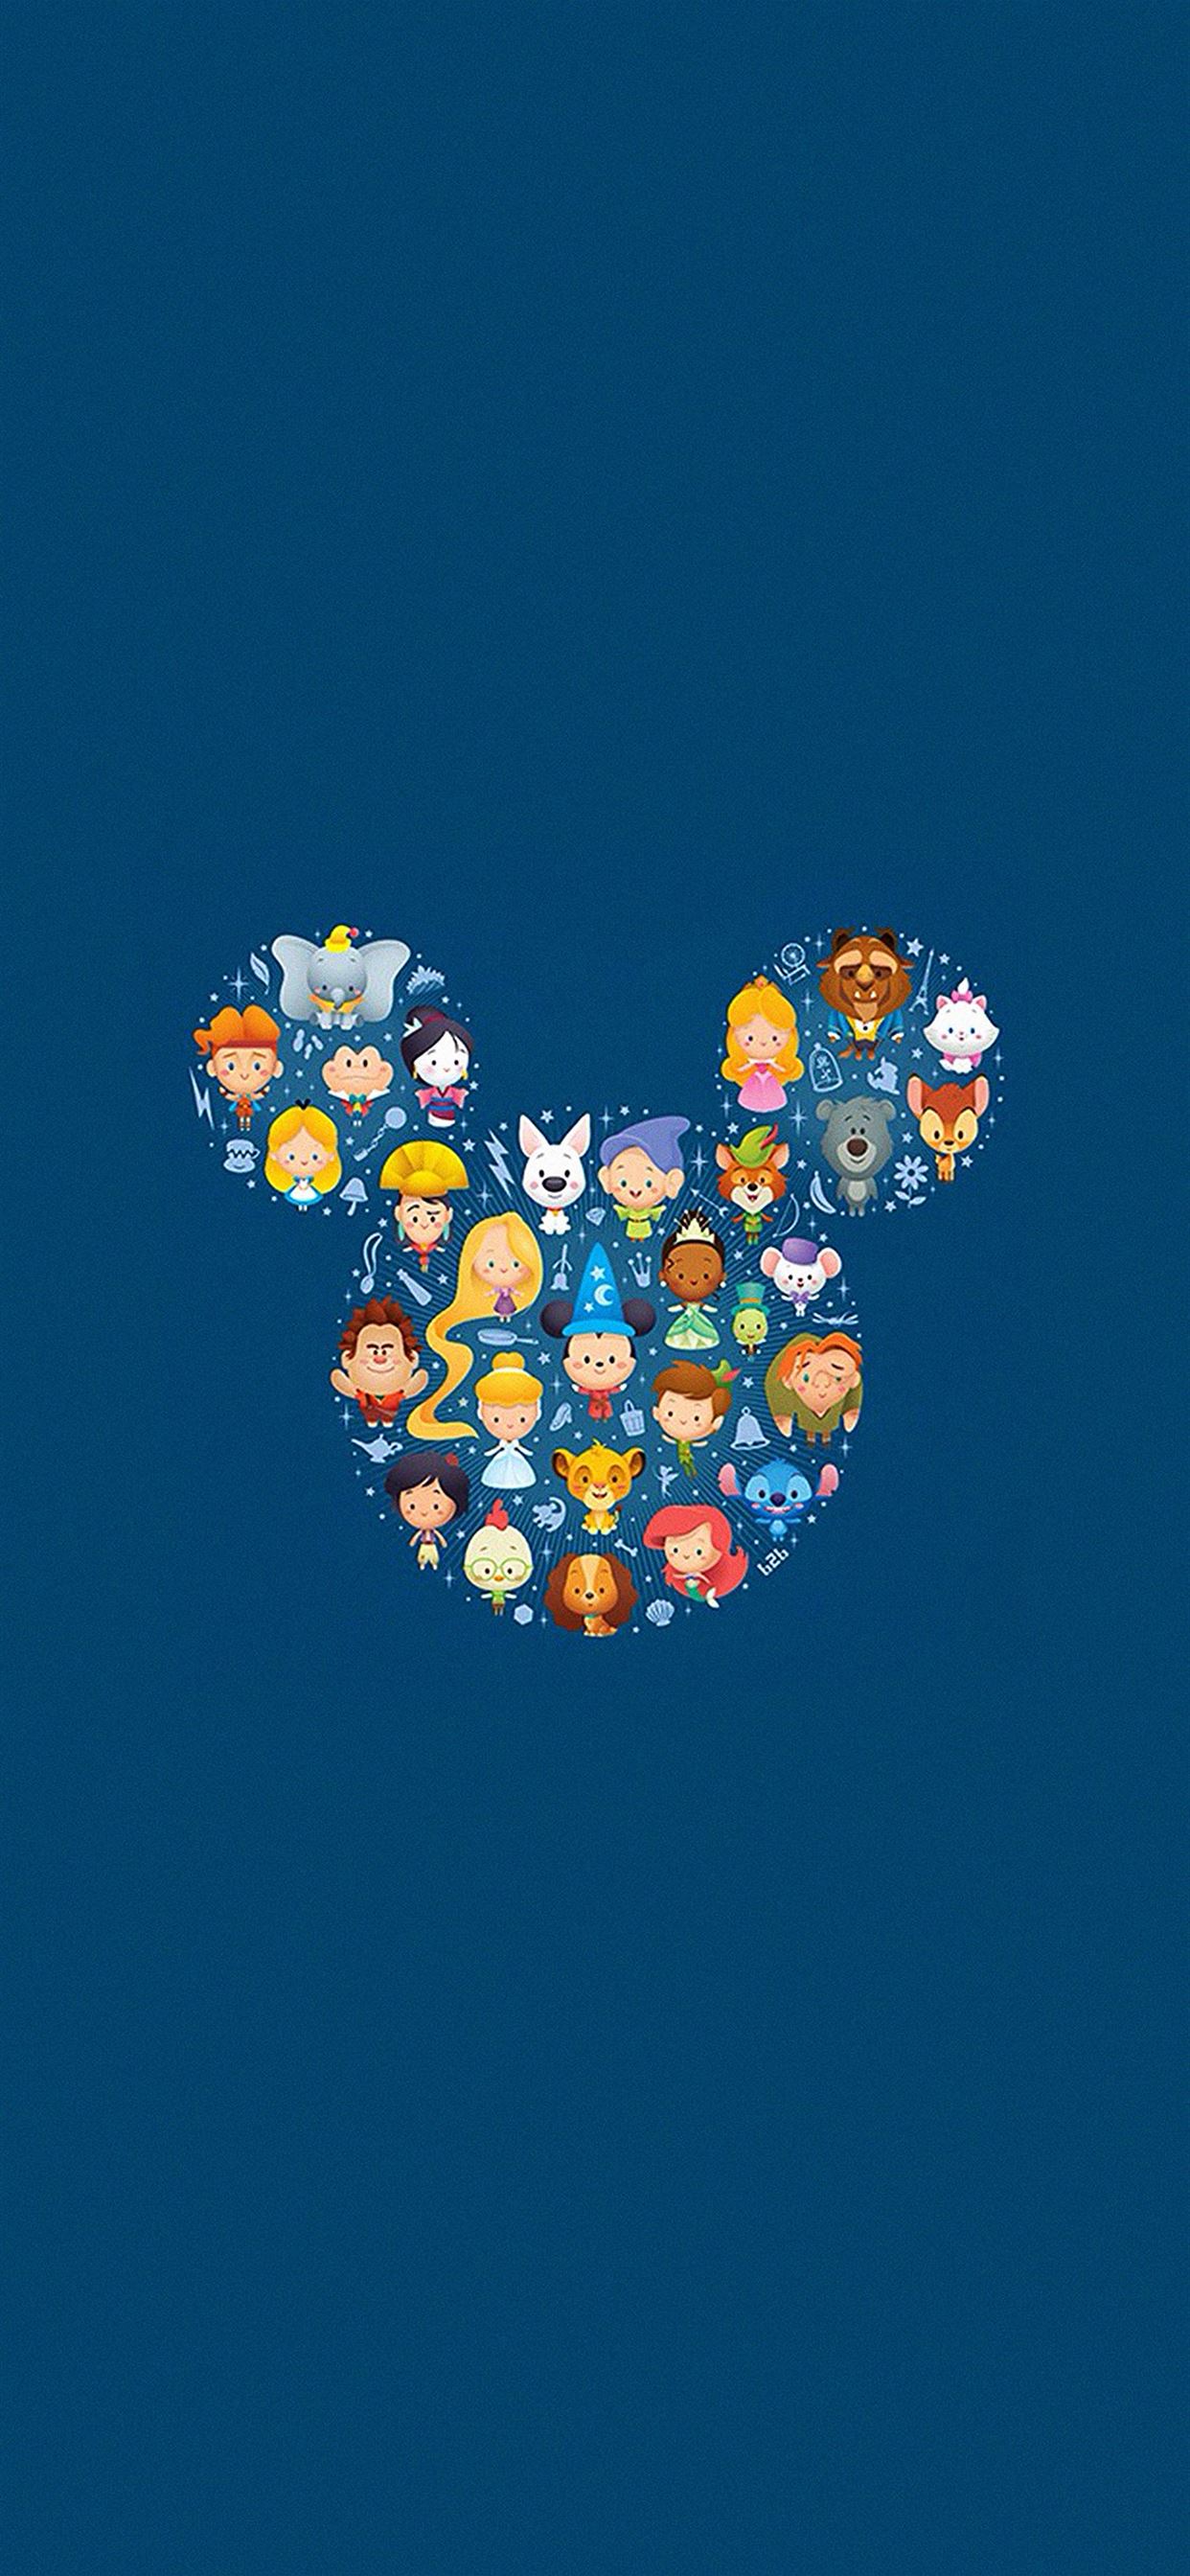 Bạn là fan của Disney và Iphone X? Vậy thì hình nền Disney cho Iphone X đáng yêu chính là lựa chọn hoàn hảo cho bạn! Với những hình ảnh đáng yêu và dễ thương của những nhân vật Disney nổi tiếng, hình nền này sẽ khiến cho giao diện điện thoại của bạn trở nên tươi vui và ngộ nghĩnh hơn.